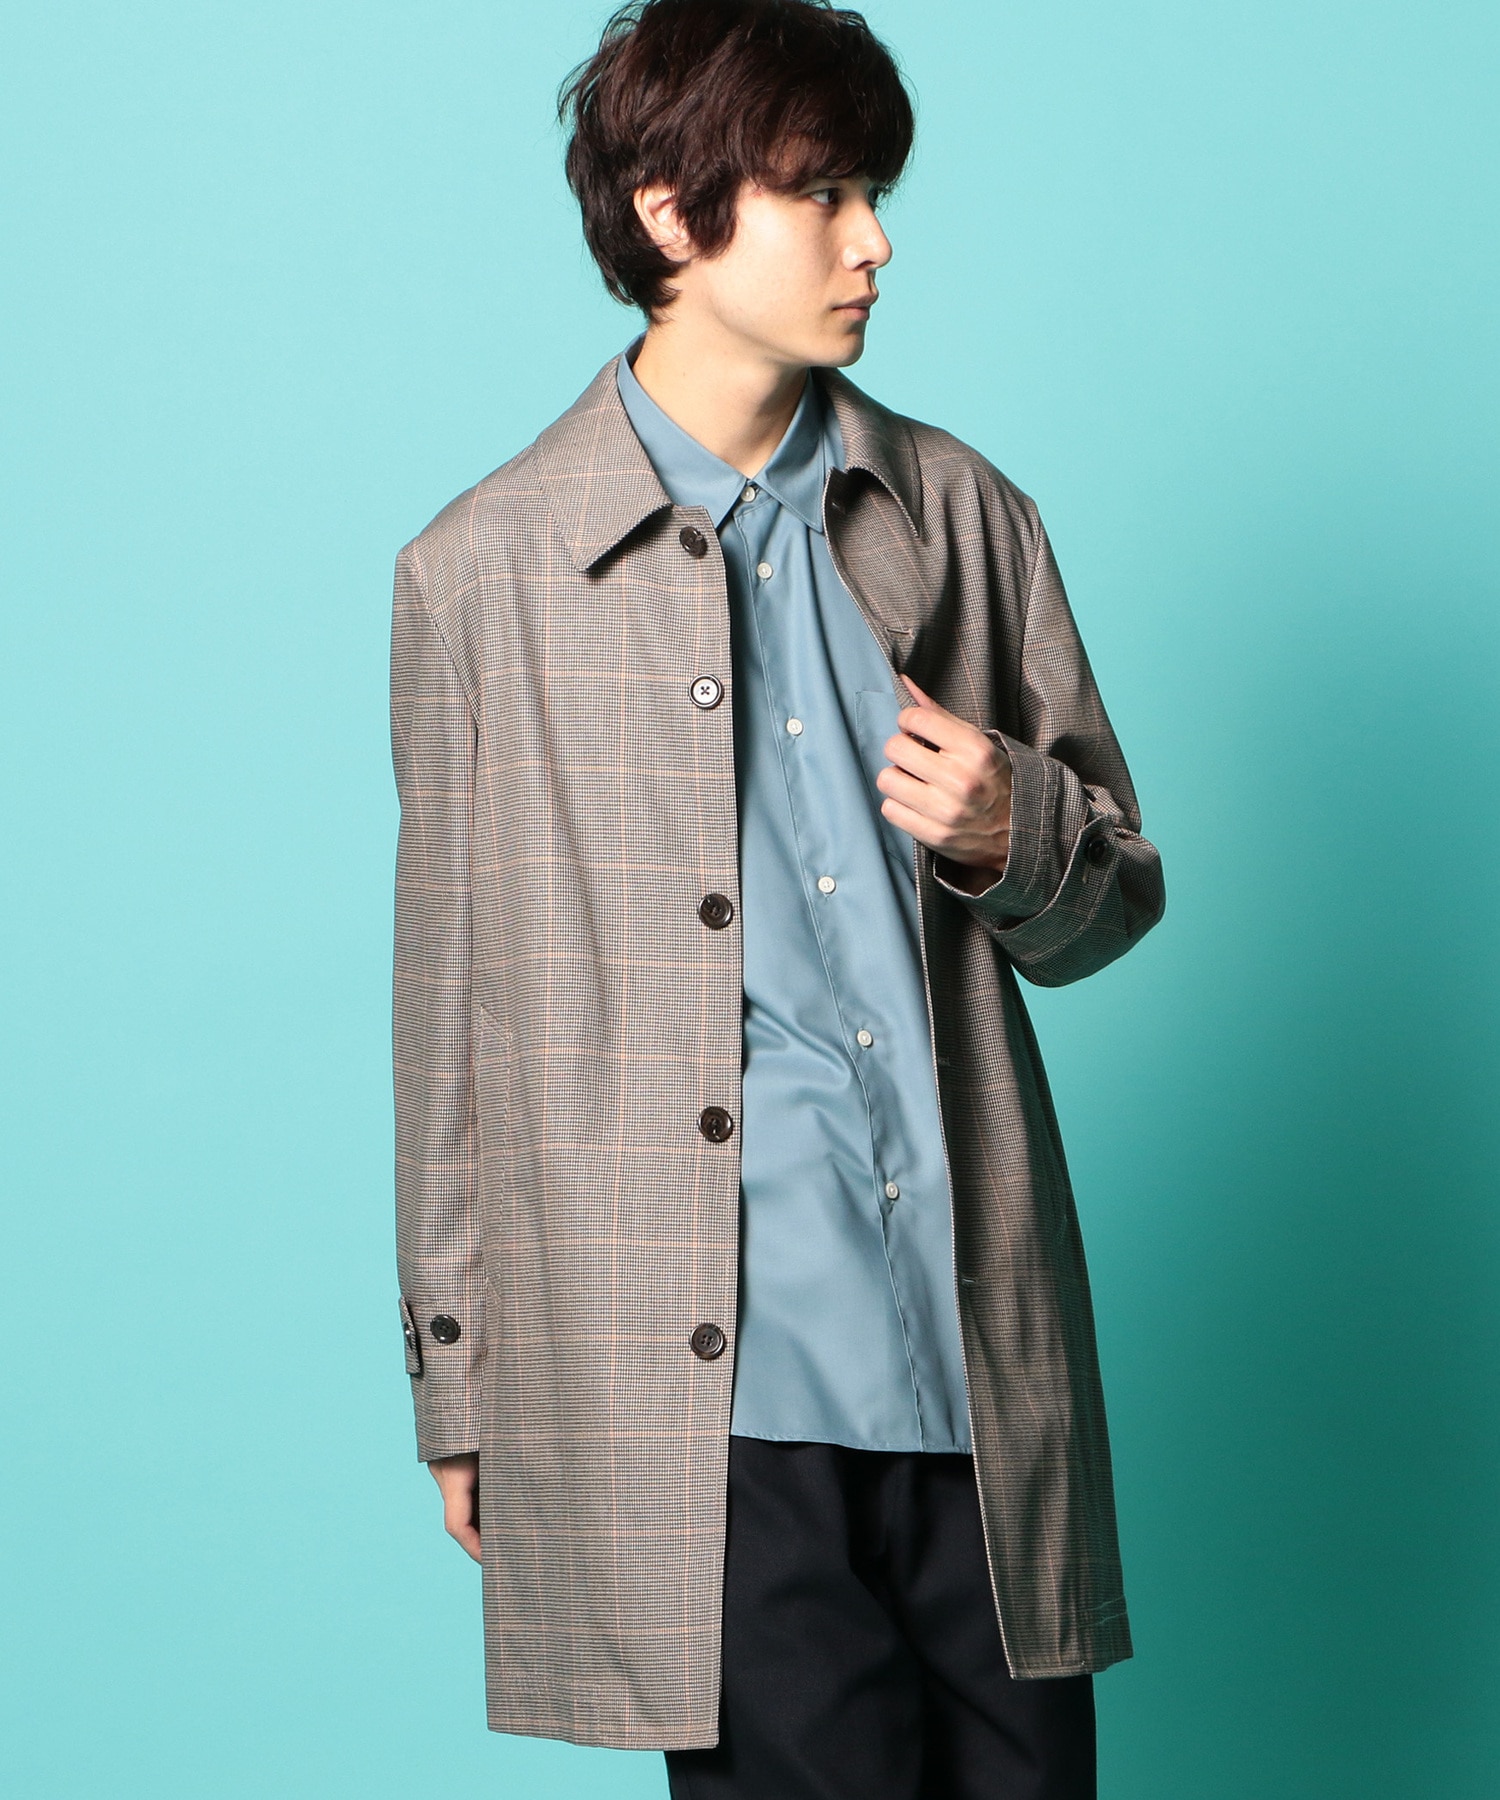 Aラインレギュラーカラー7分袖シャツ Japan Fabric メンズファッション通販 Men S Bigi Online Store メンズビギ オンラインストア